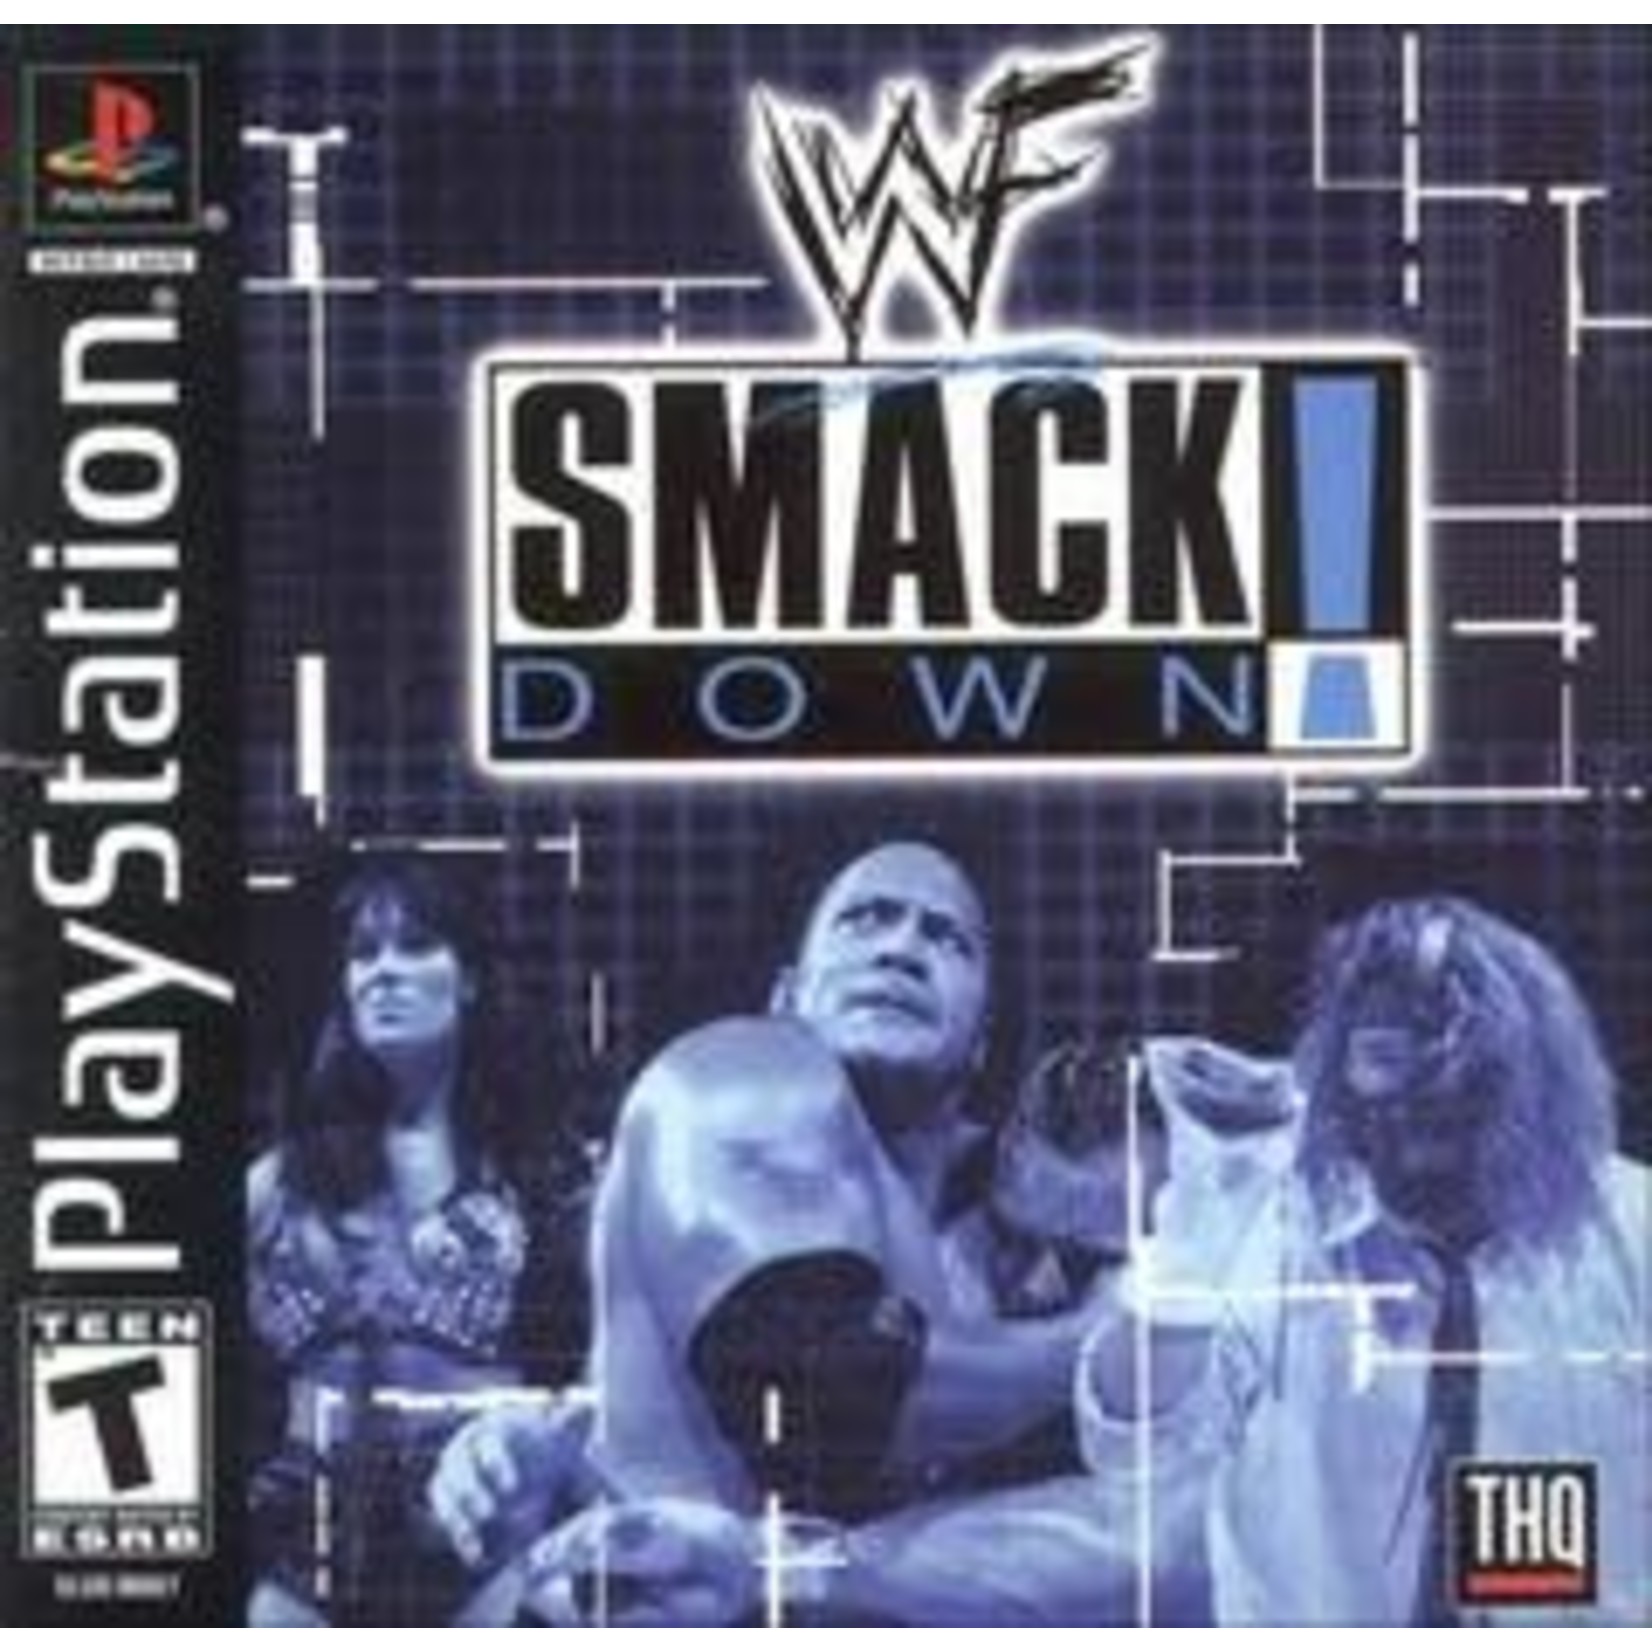 PS1U-WWF SMACKDOWN